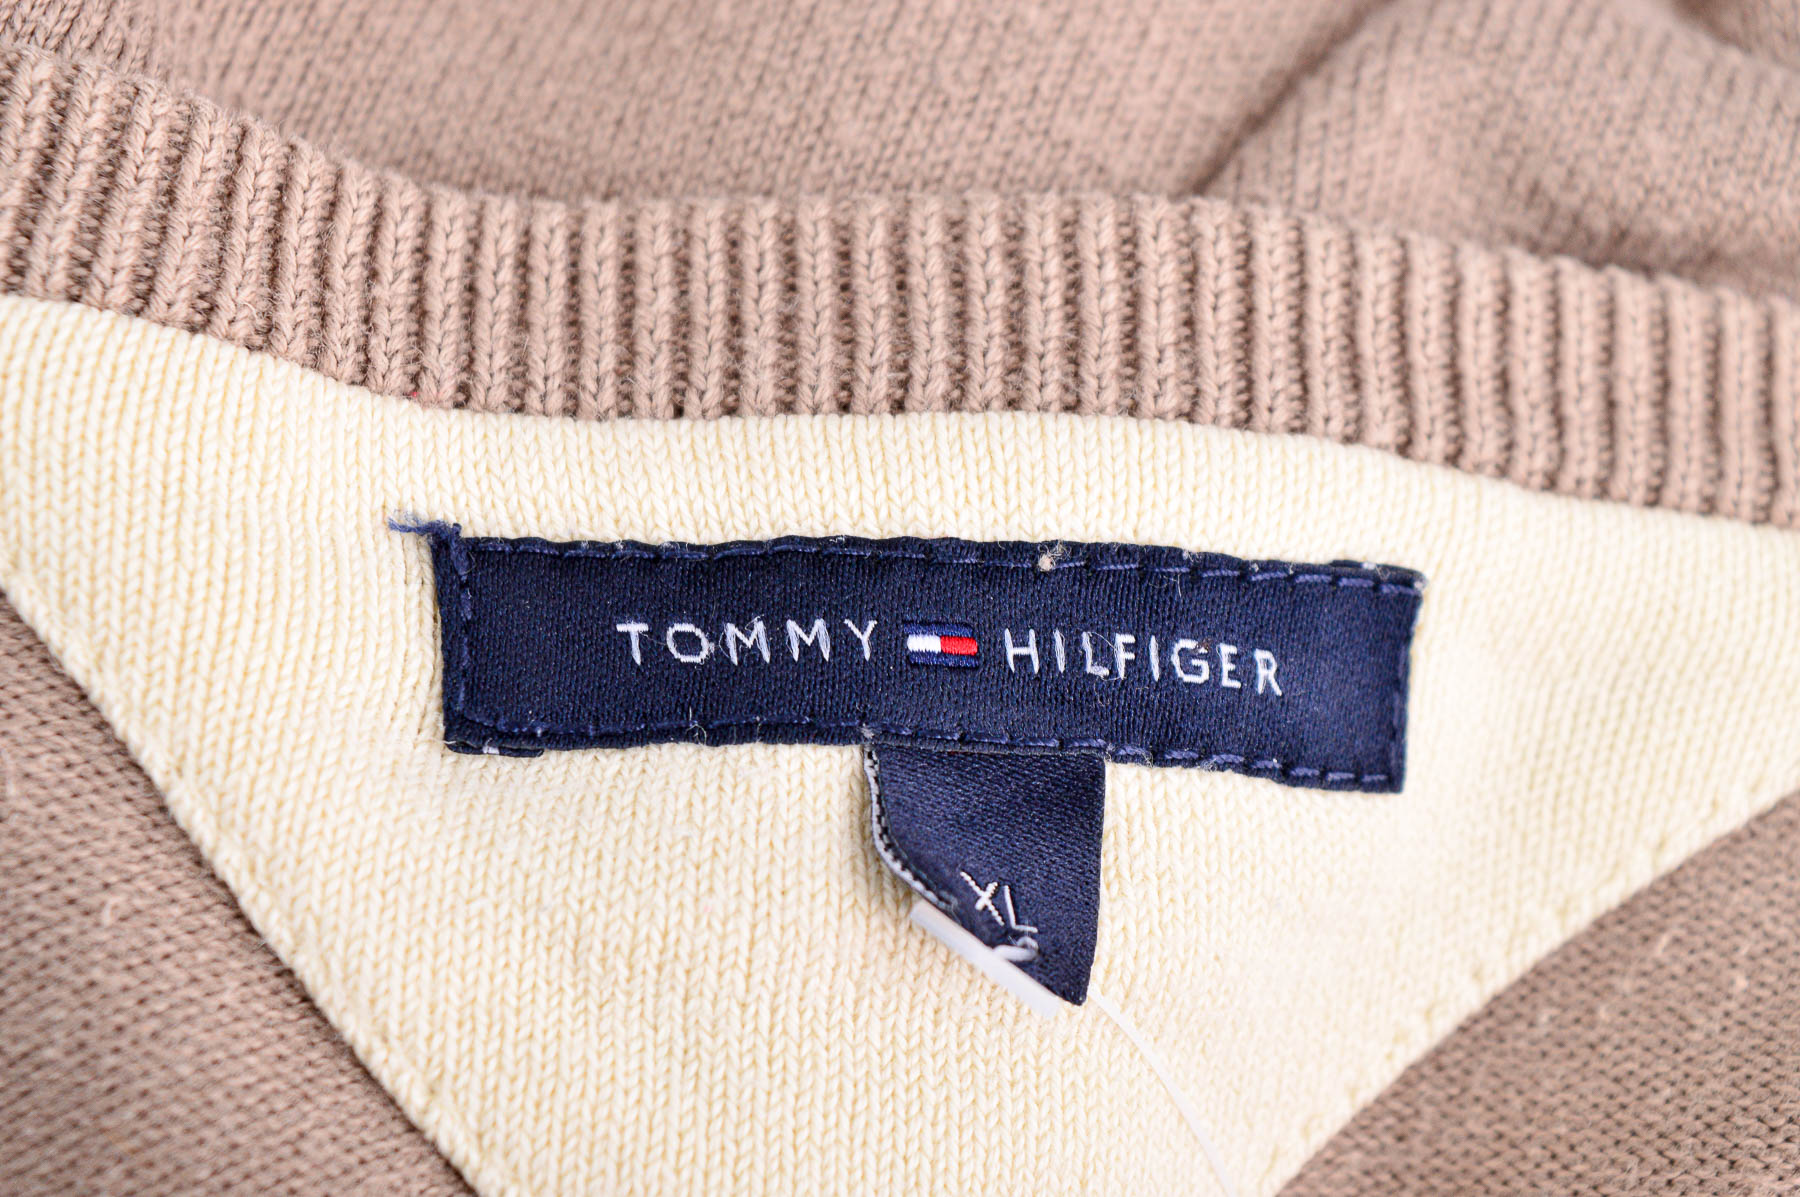 Pulover pentru bărbați - TOMMY HILFIGER - 2